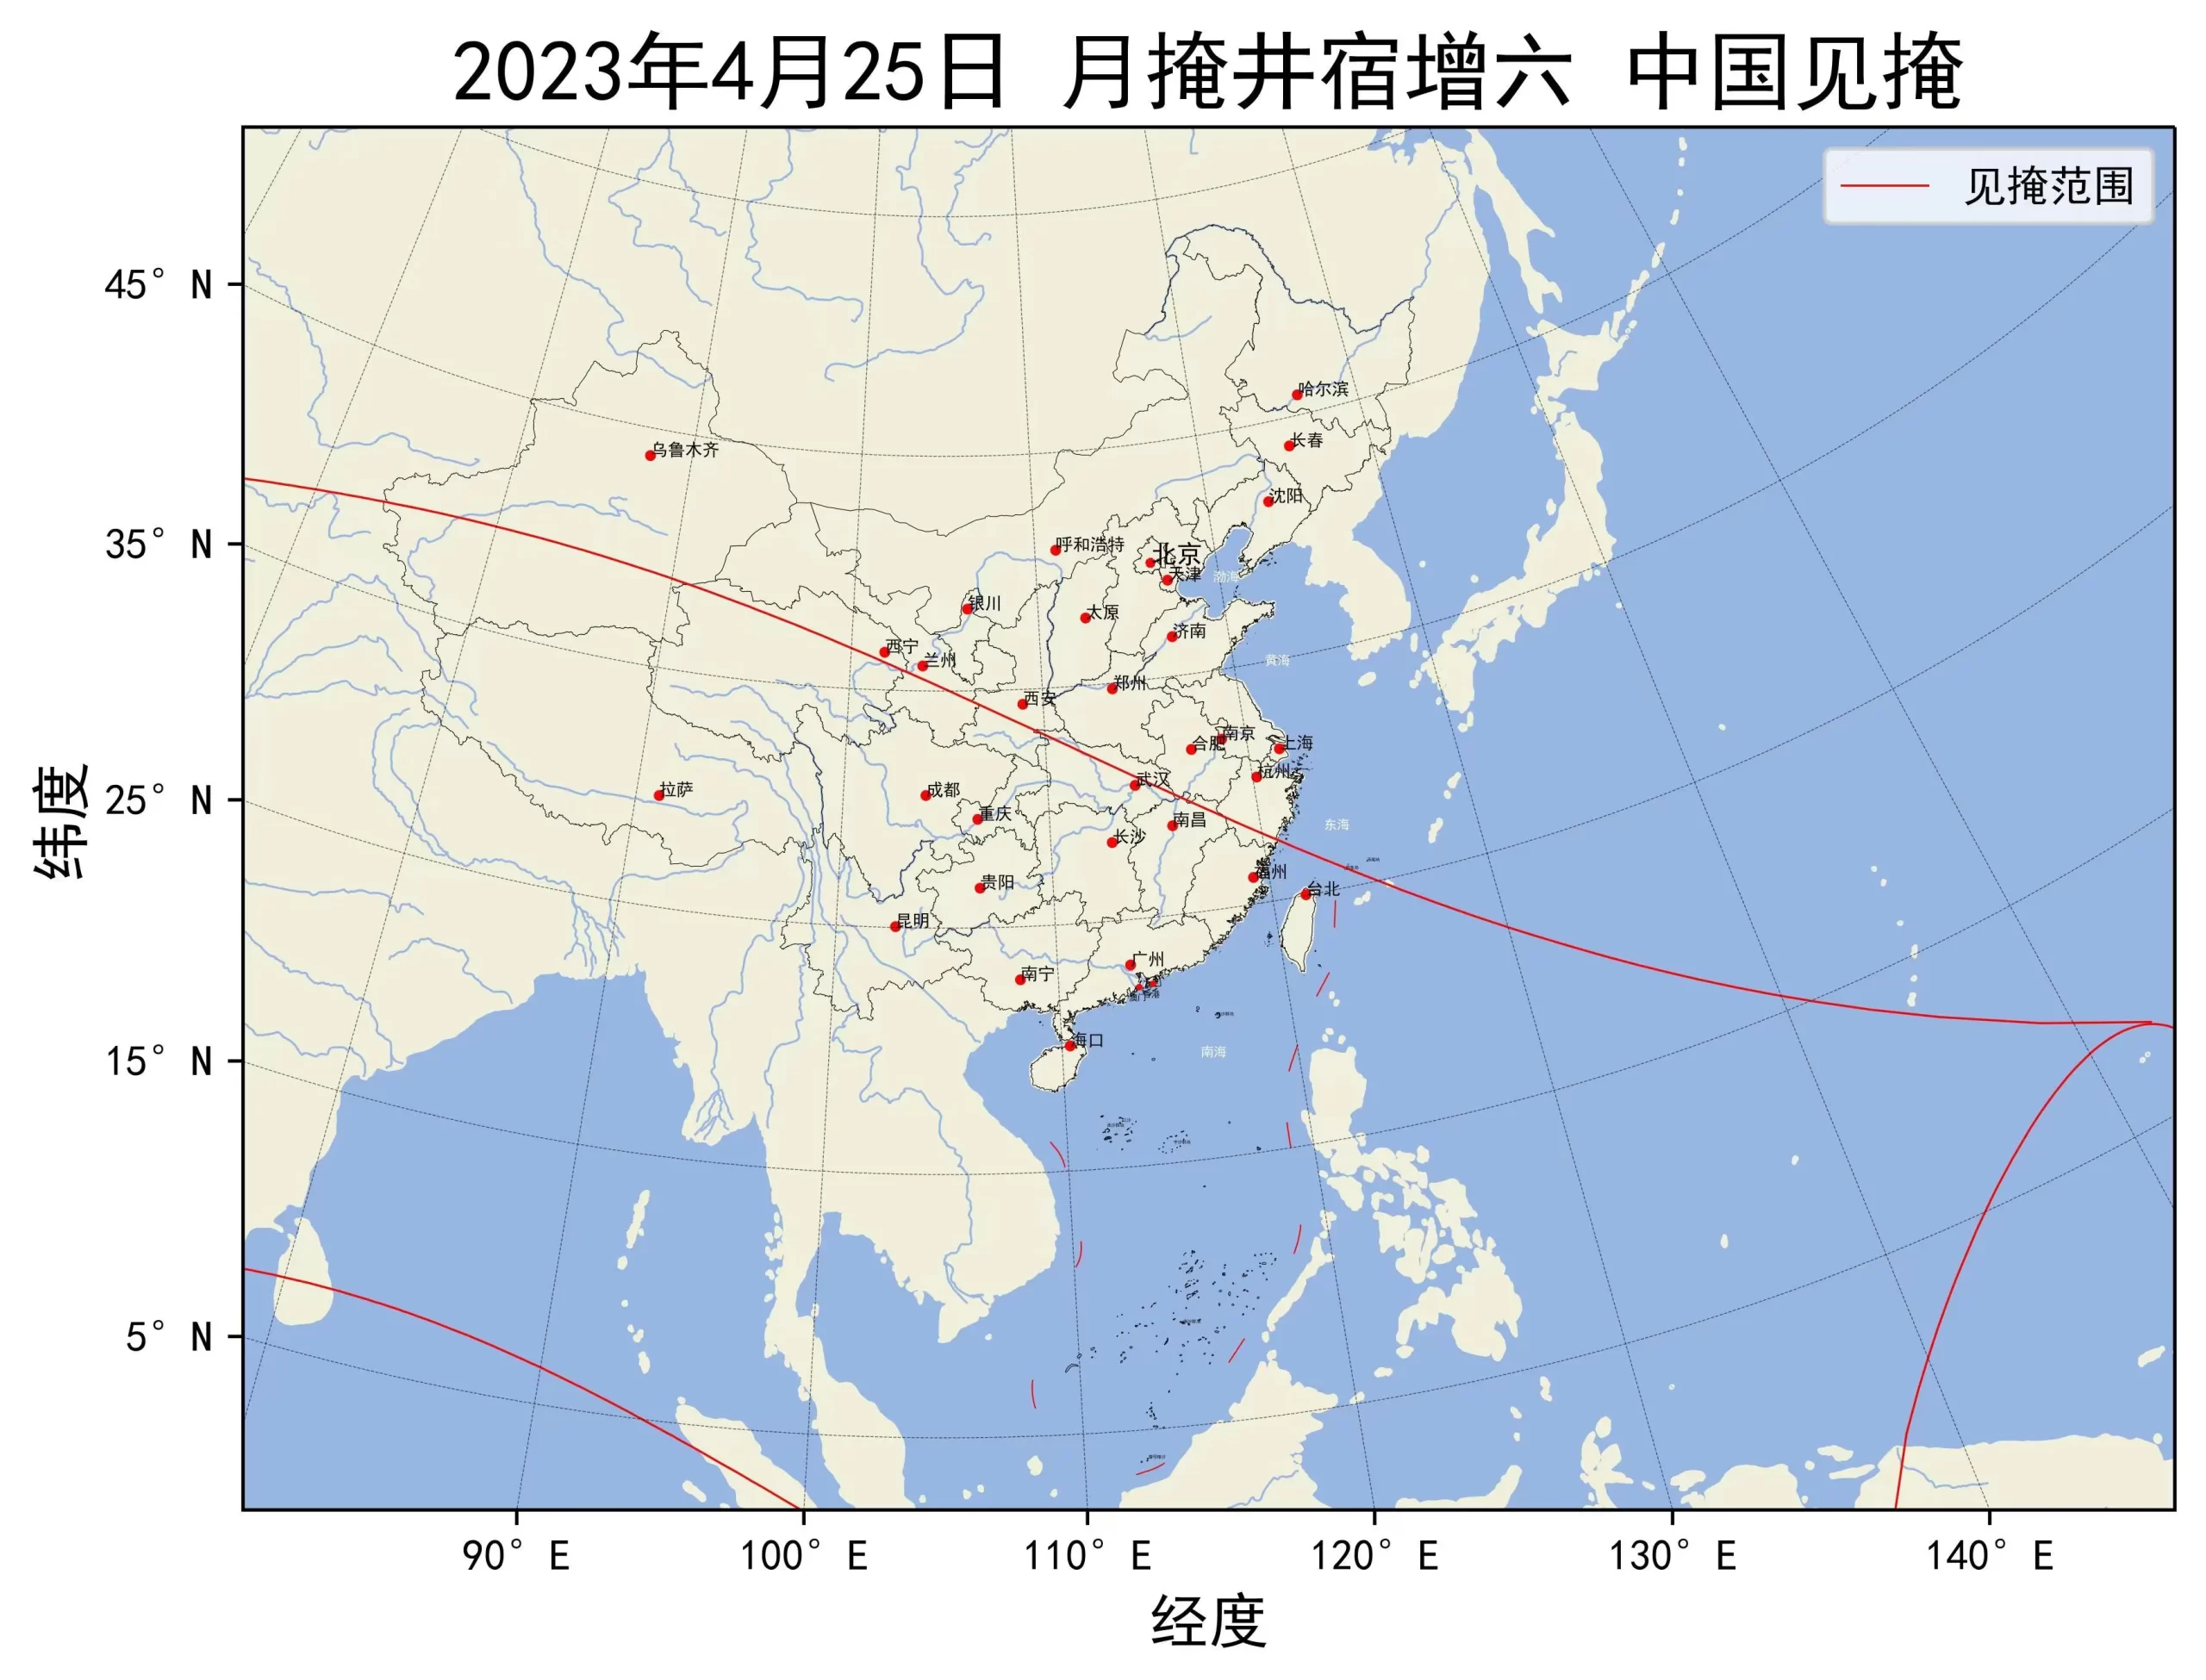 2023年4月25日月掩井宿增六中国见掩